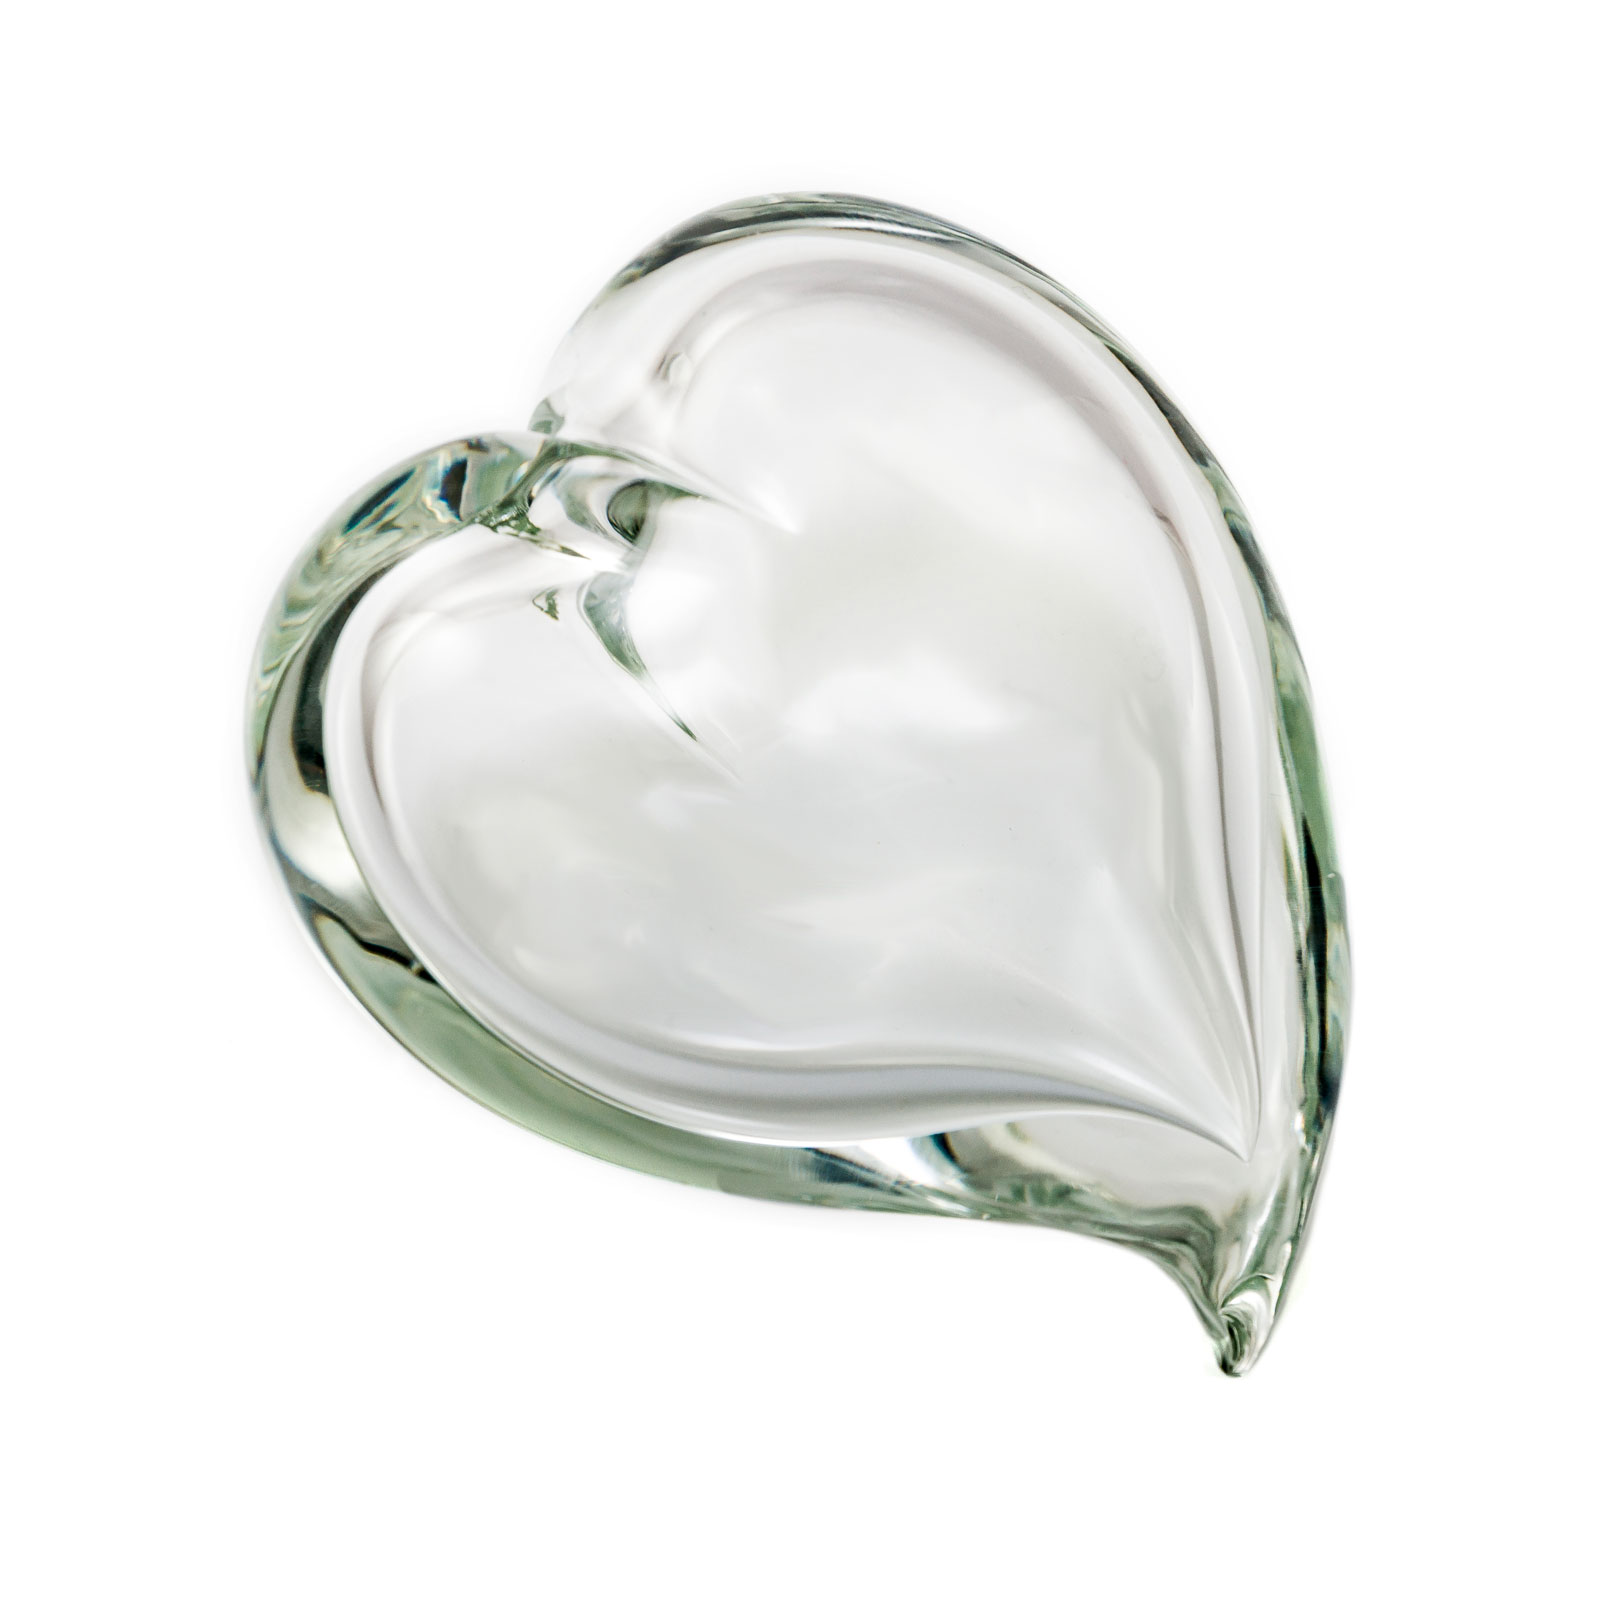 cuore-cristallo-trasparente-vetro-murano